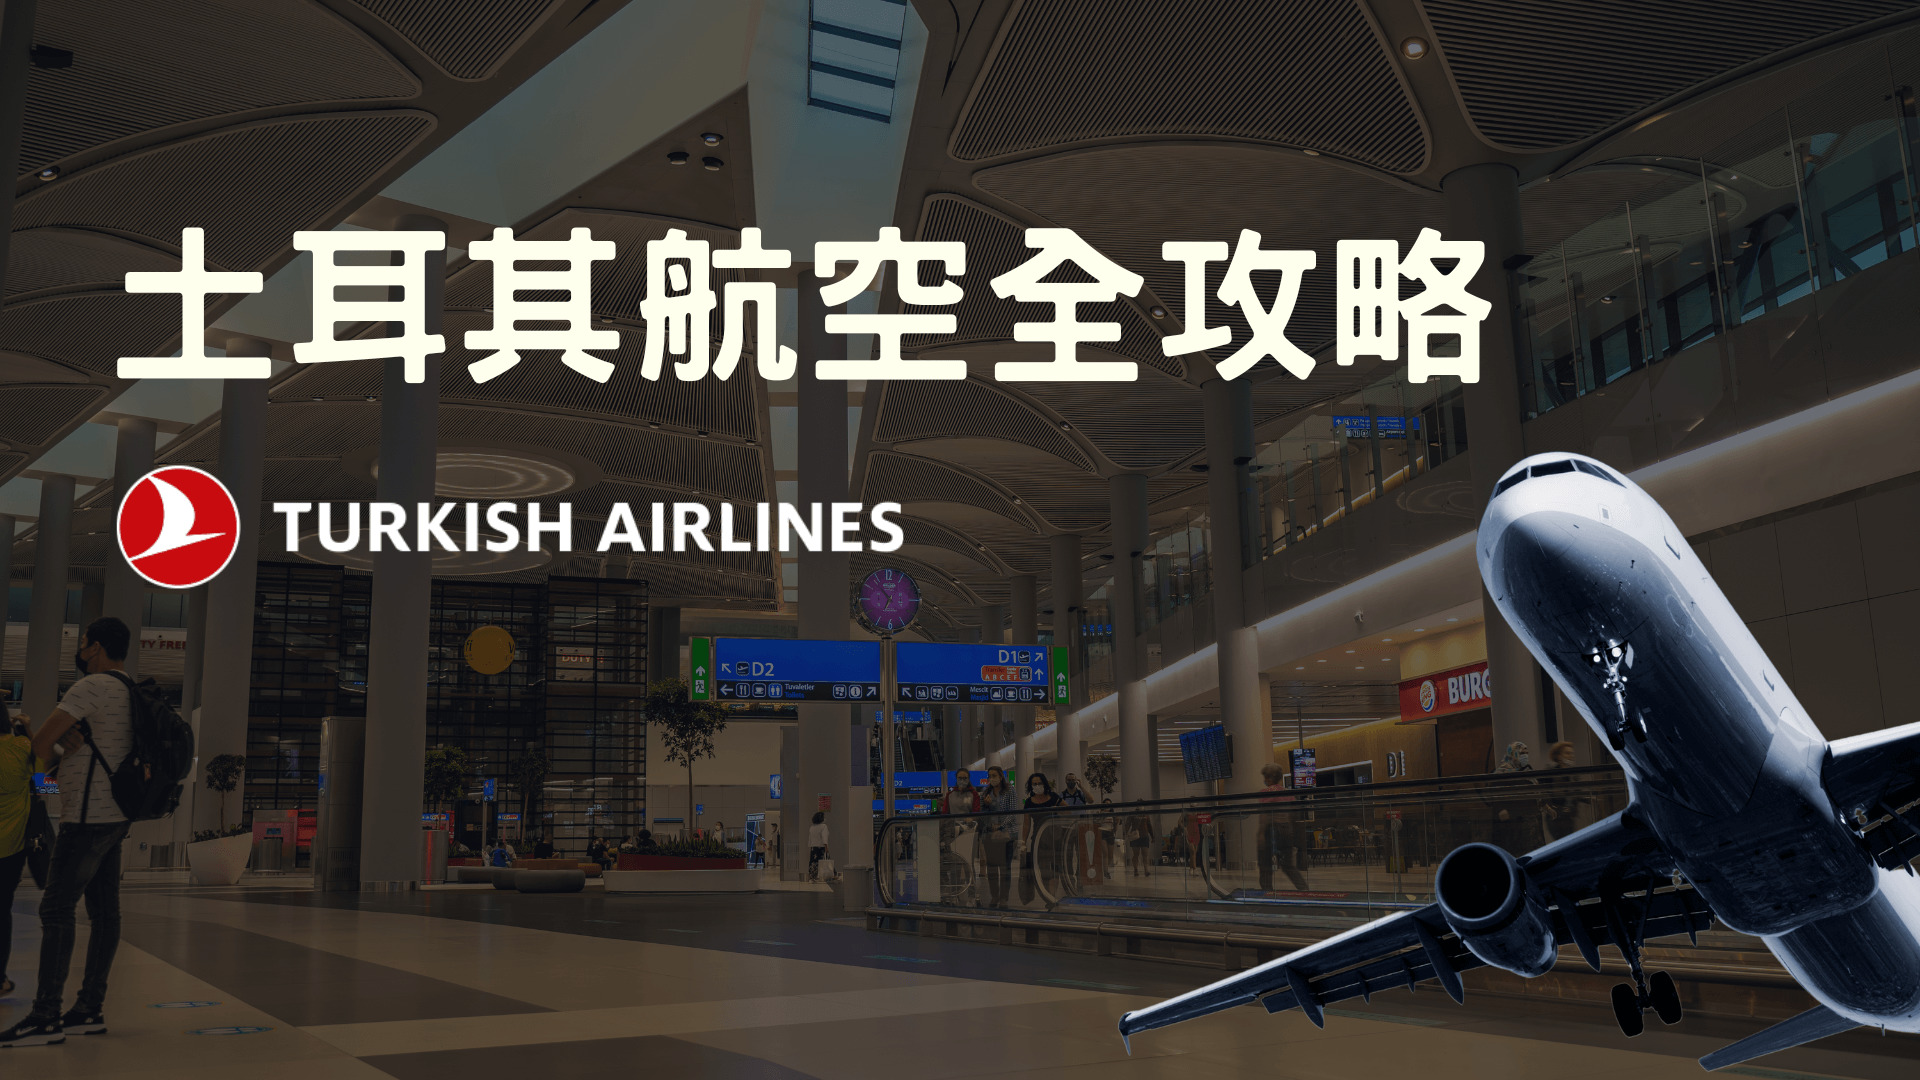 德國機票新選項 土耳其航空 (Turkish Airlines) 購票及搭乘經驗談